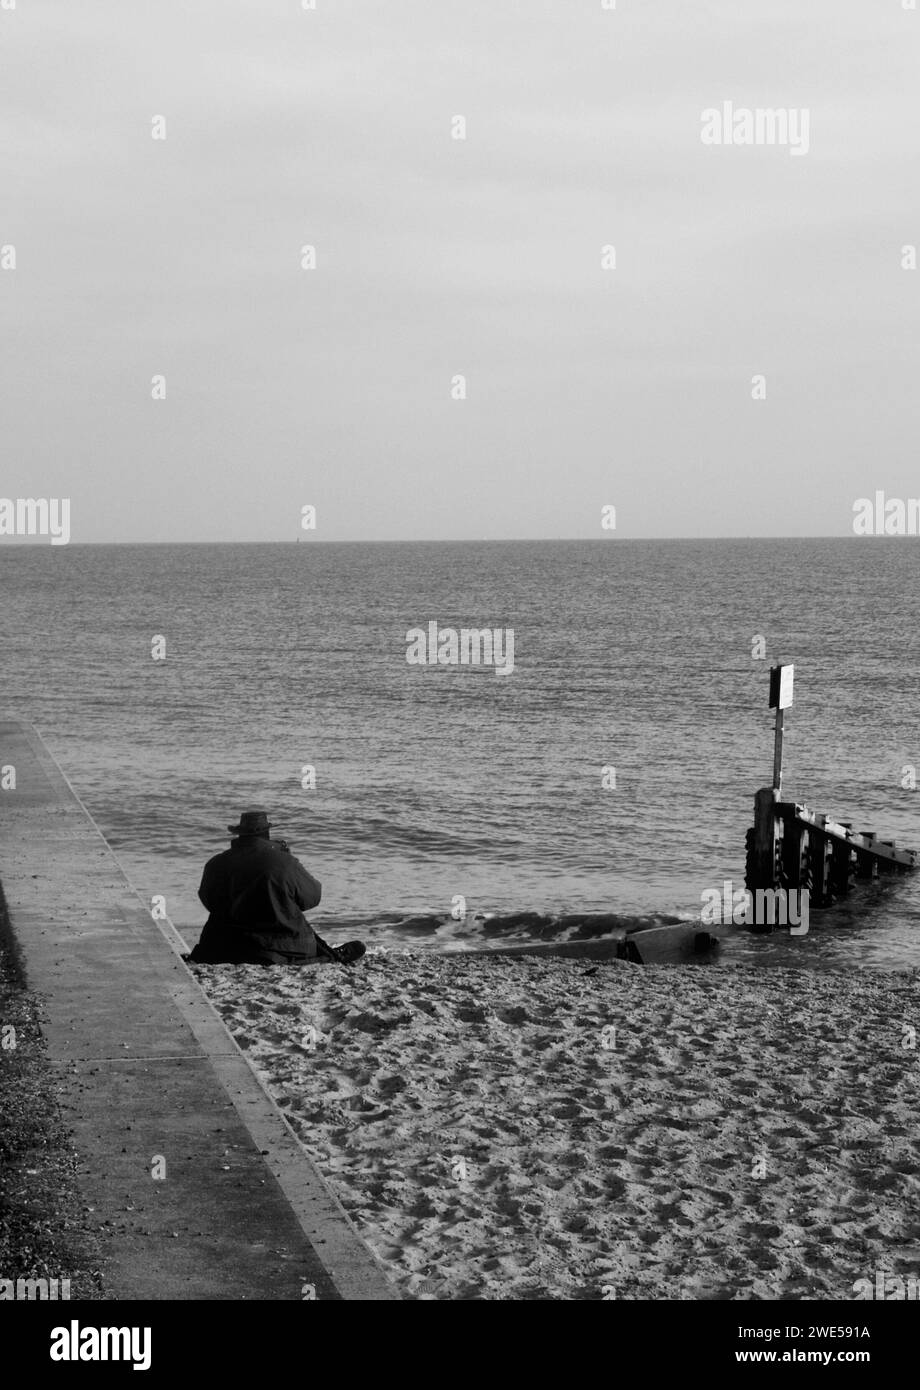 Man on beach, Felixstowe, Suffolk Stock Photo